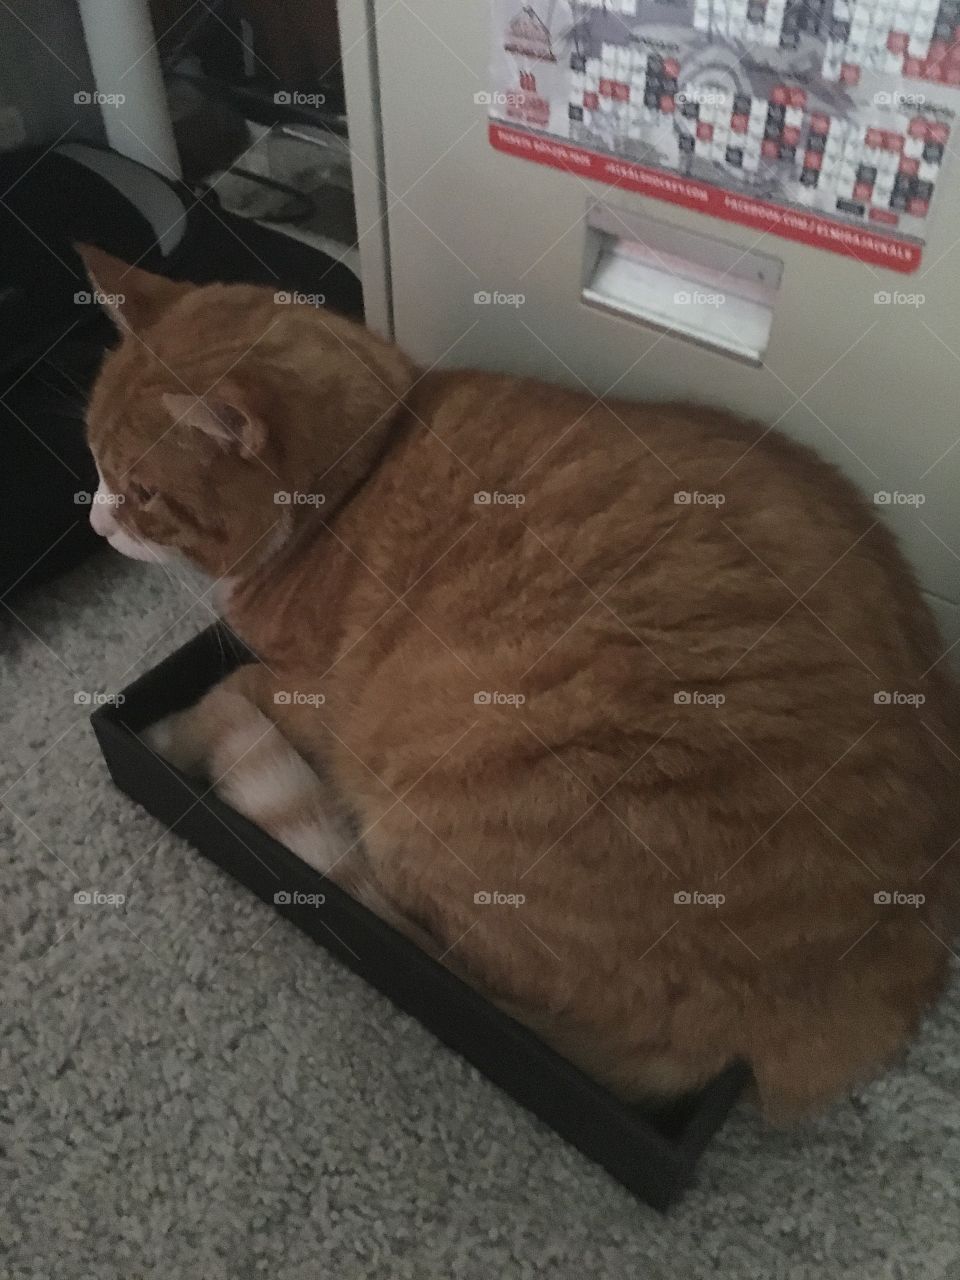 My cat in a box